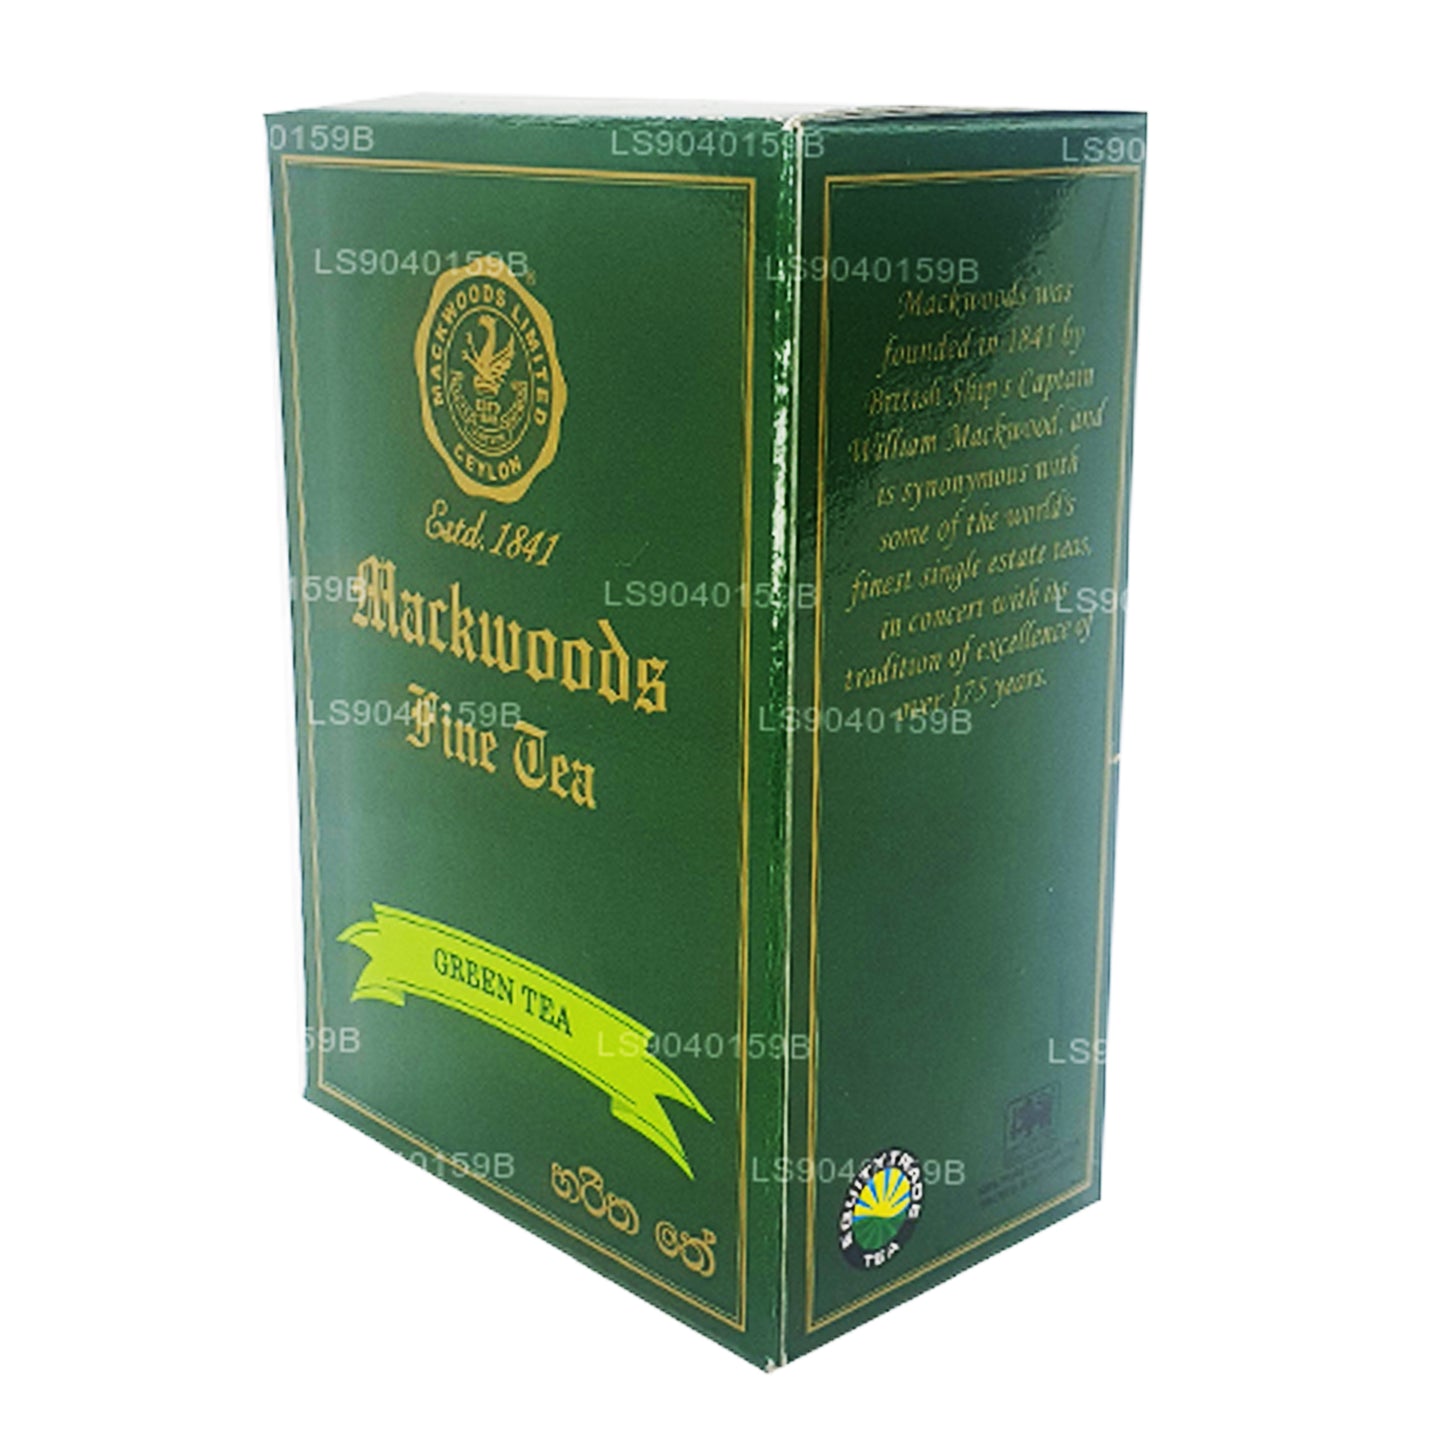 Té verde de hojas sueltas Mackwoods (100 g)